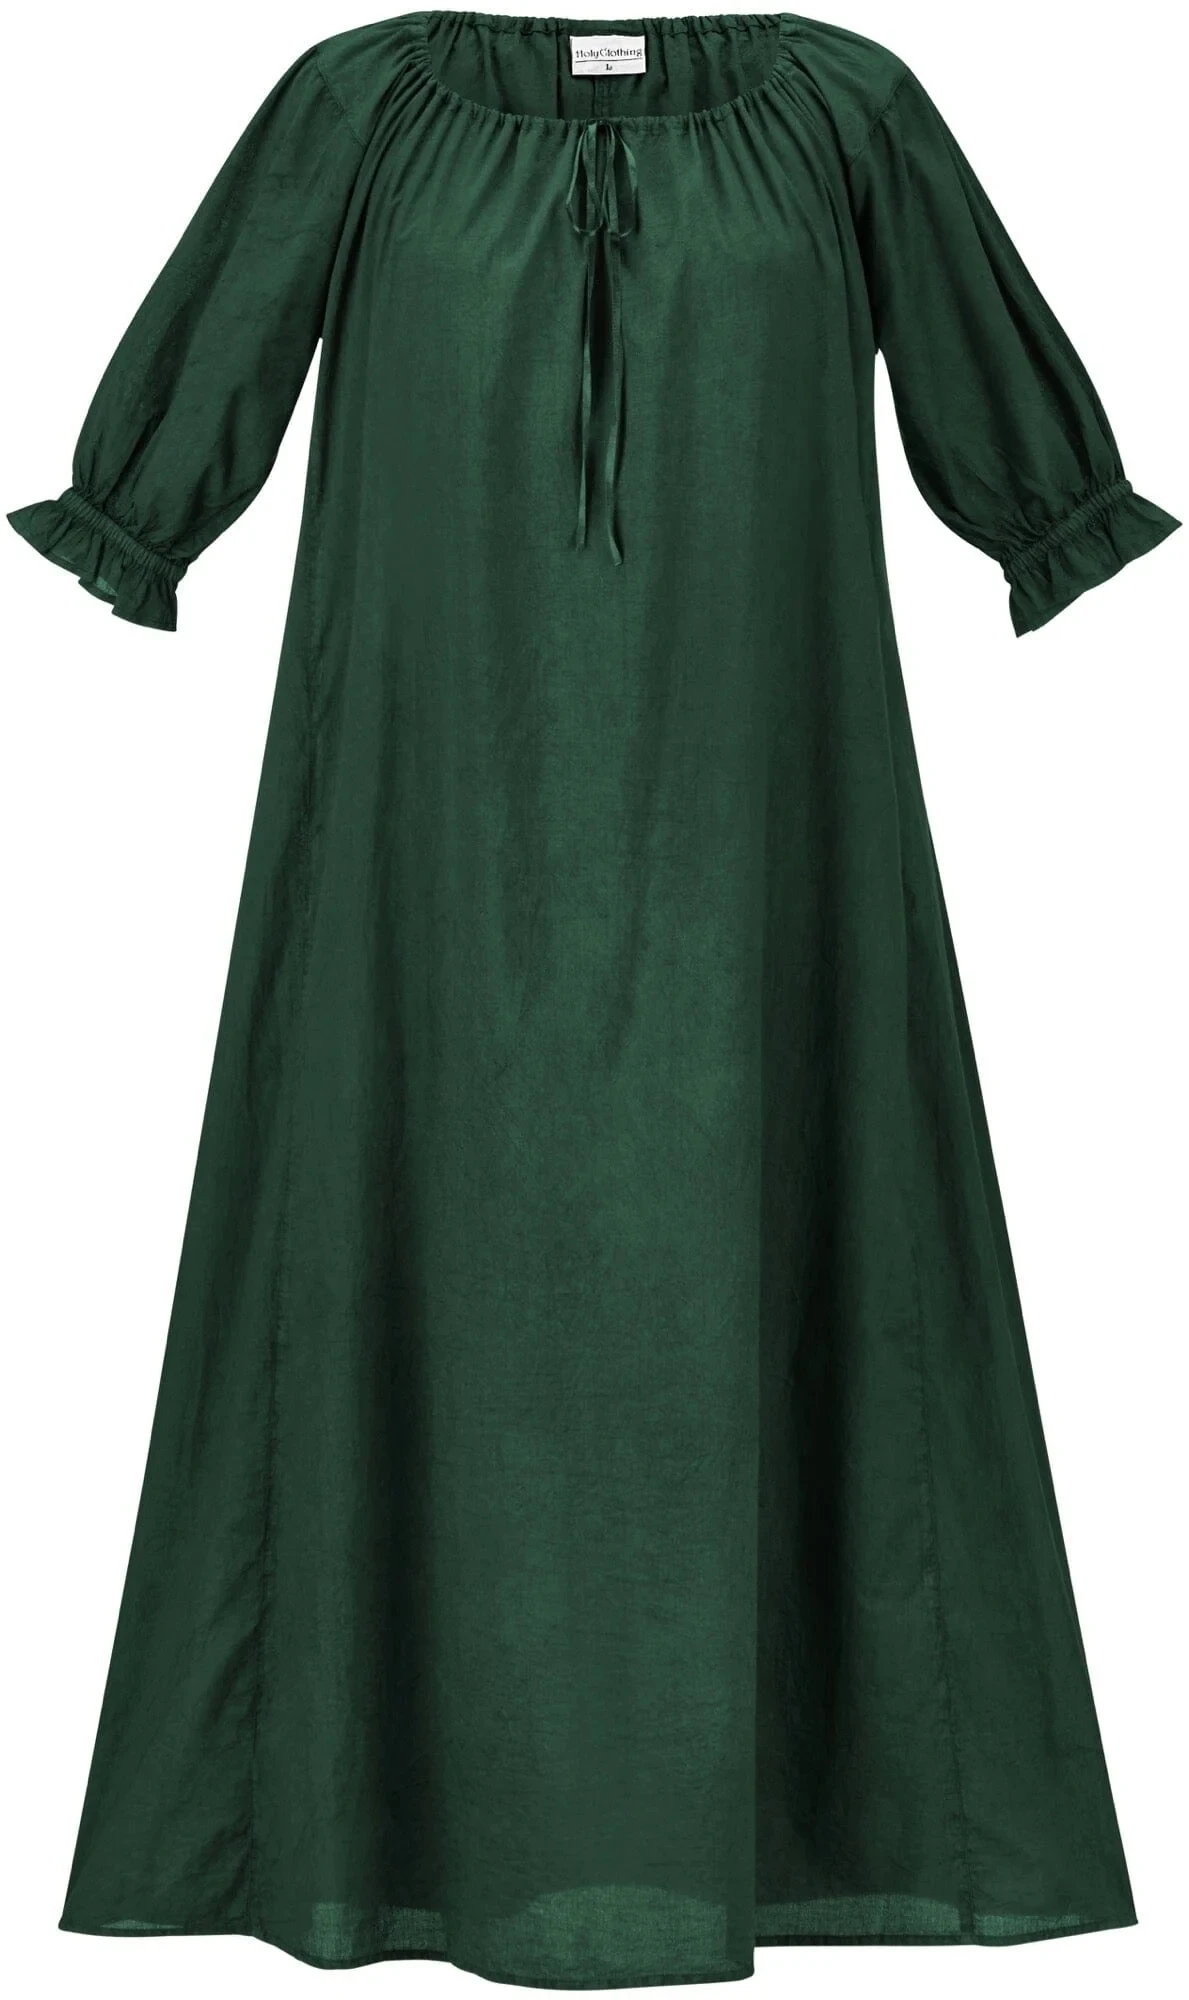 Женствена рокля от епохата на регентството Викторианска бална рокля Cosplay Костюм Риза Рокля от епохата на Регентството Рокля на Джейн Остин Средновековна Зелена рокля